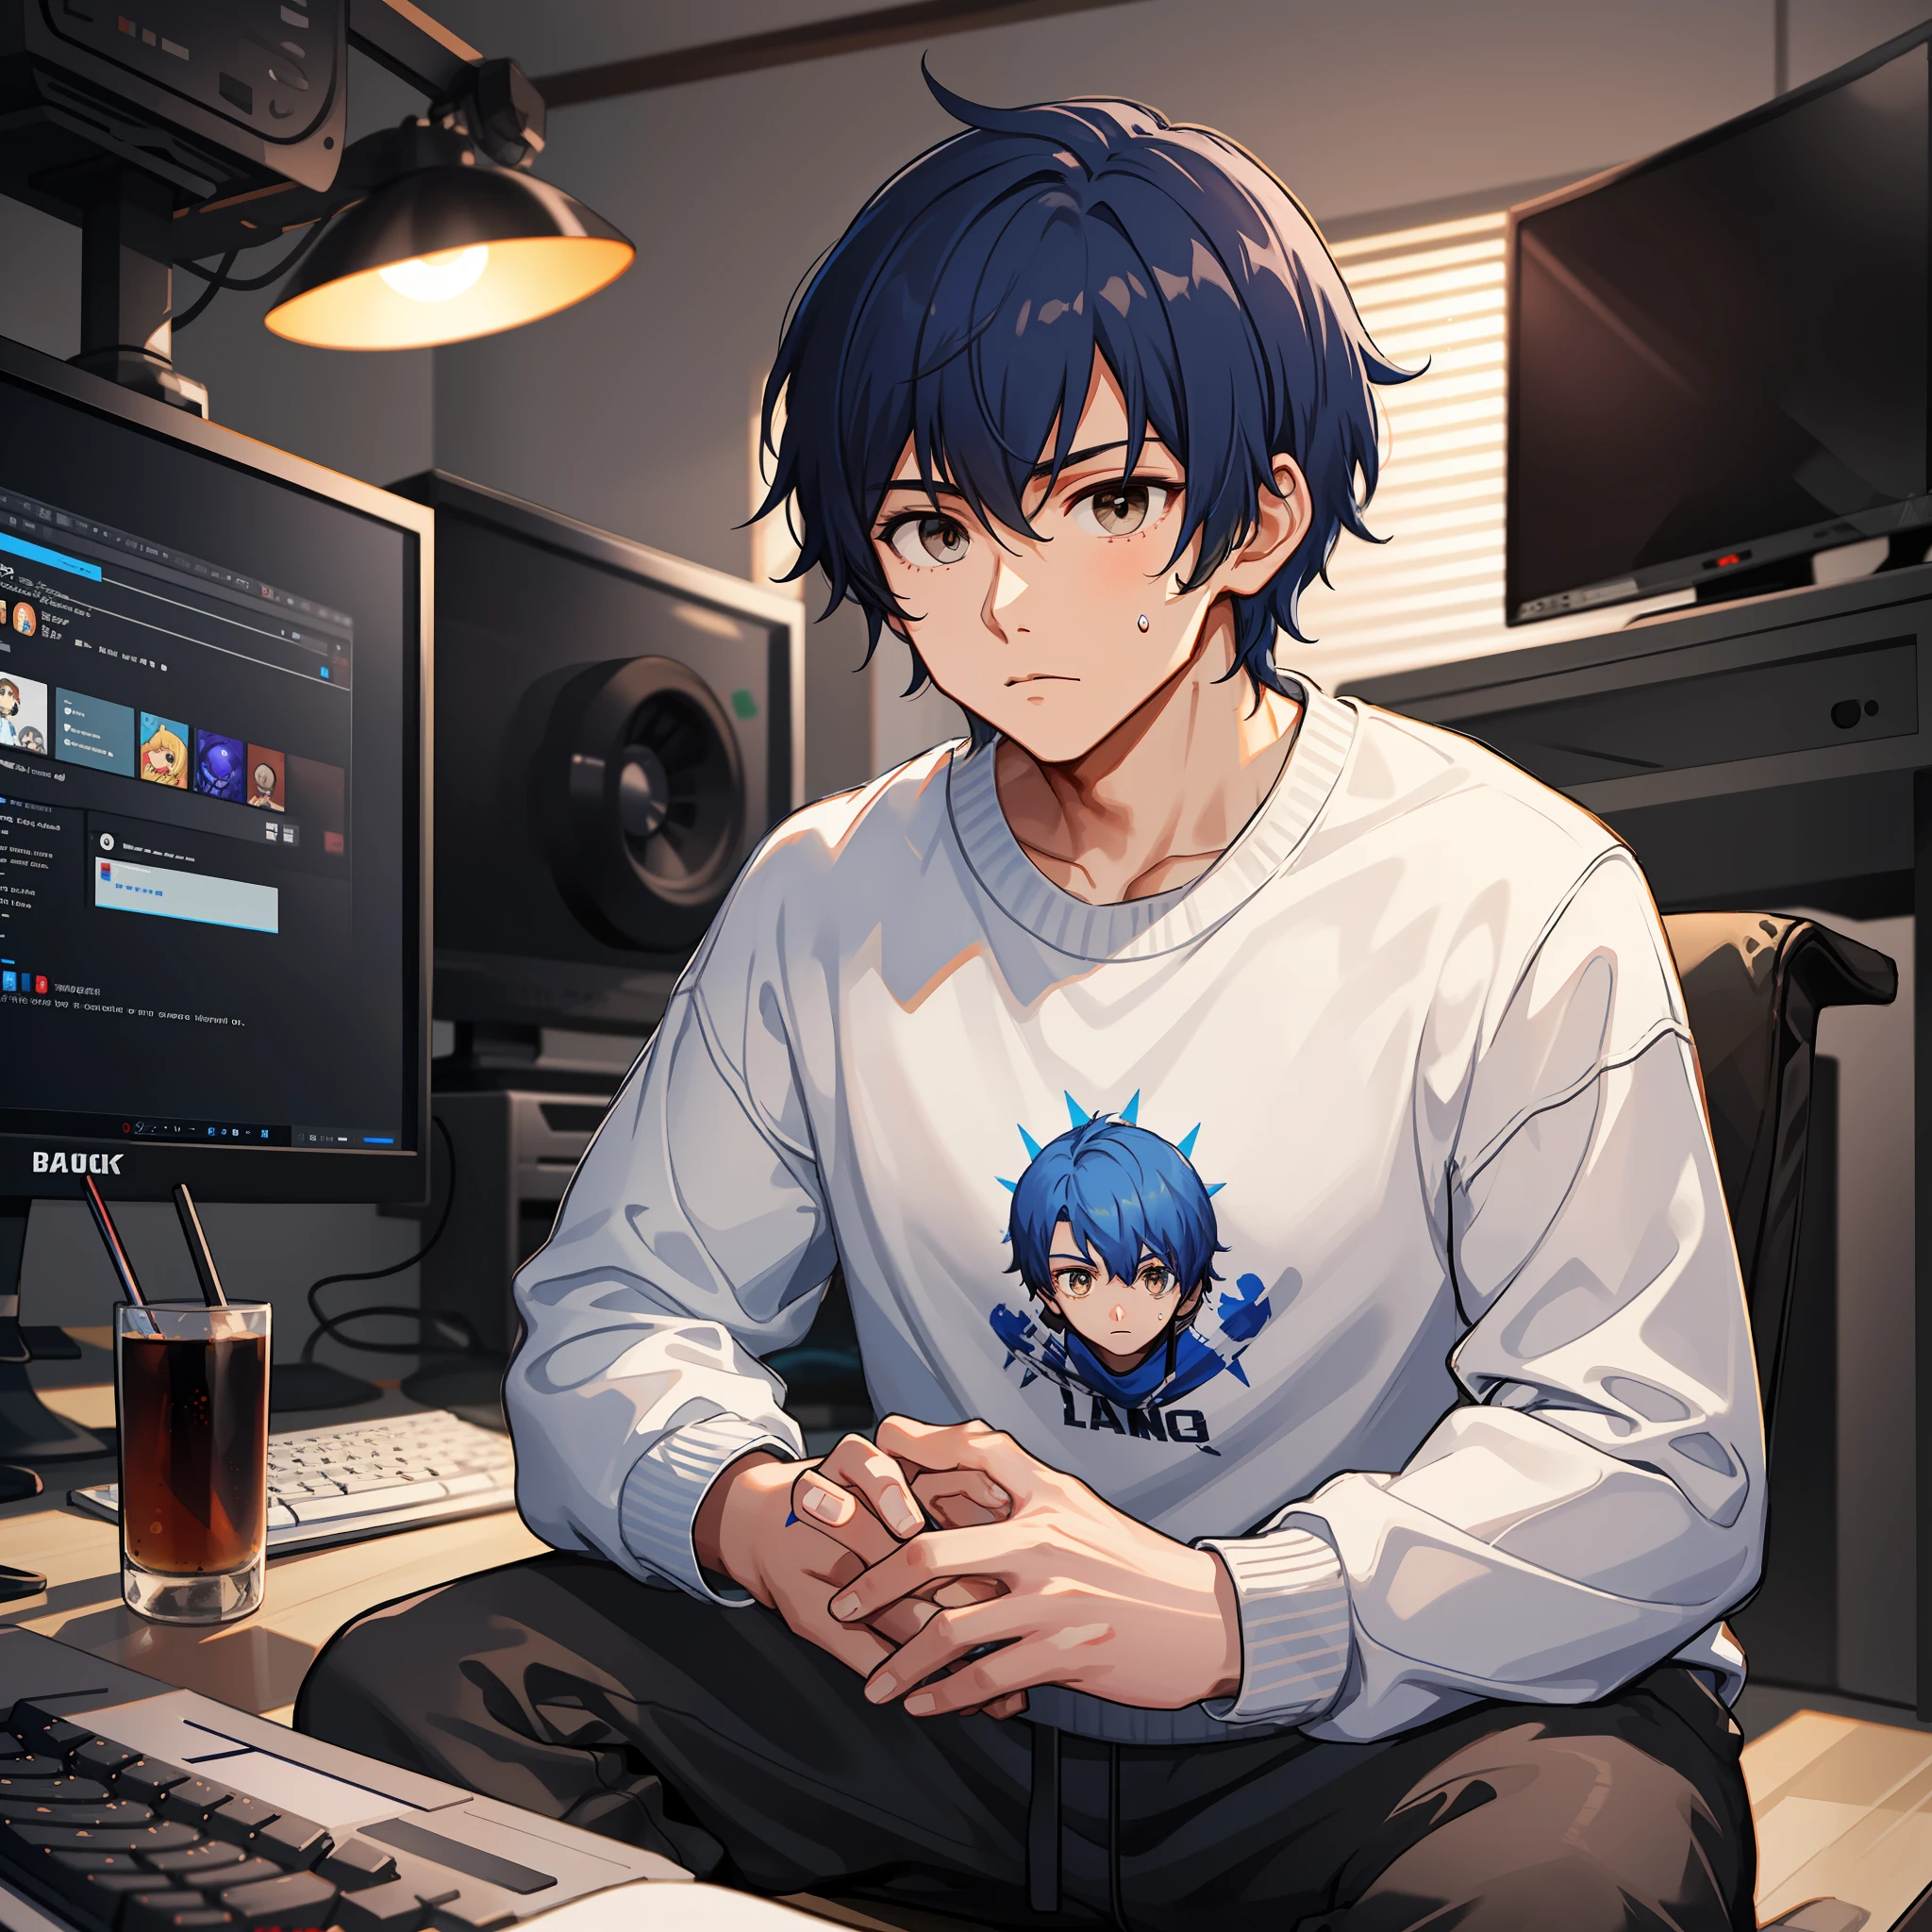 "Un chico con corto, ondulado, pelo azul real, con una sudadera blanca y pantalones de chándal negros, sentado frente a una computadora para juegos, Ojos café oscuro."